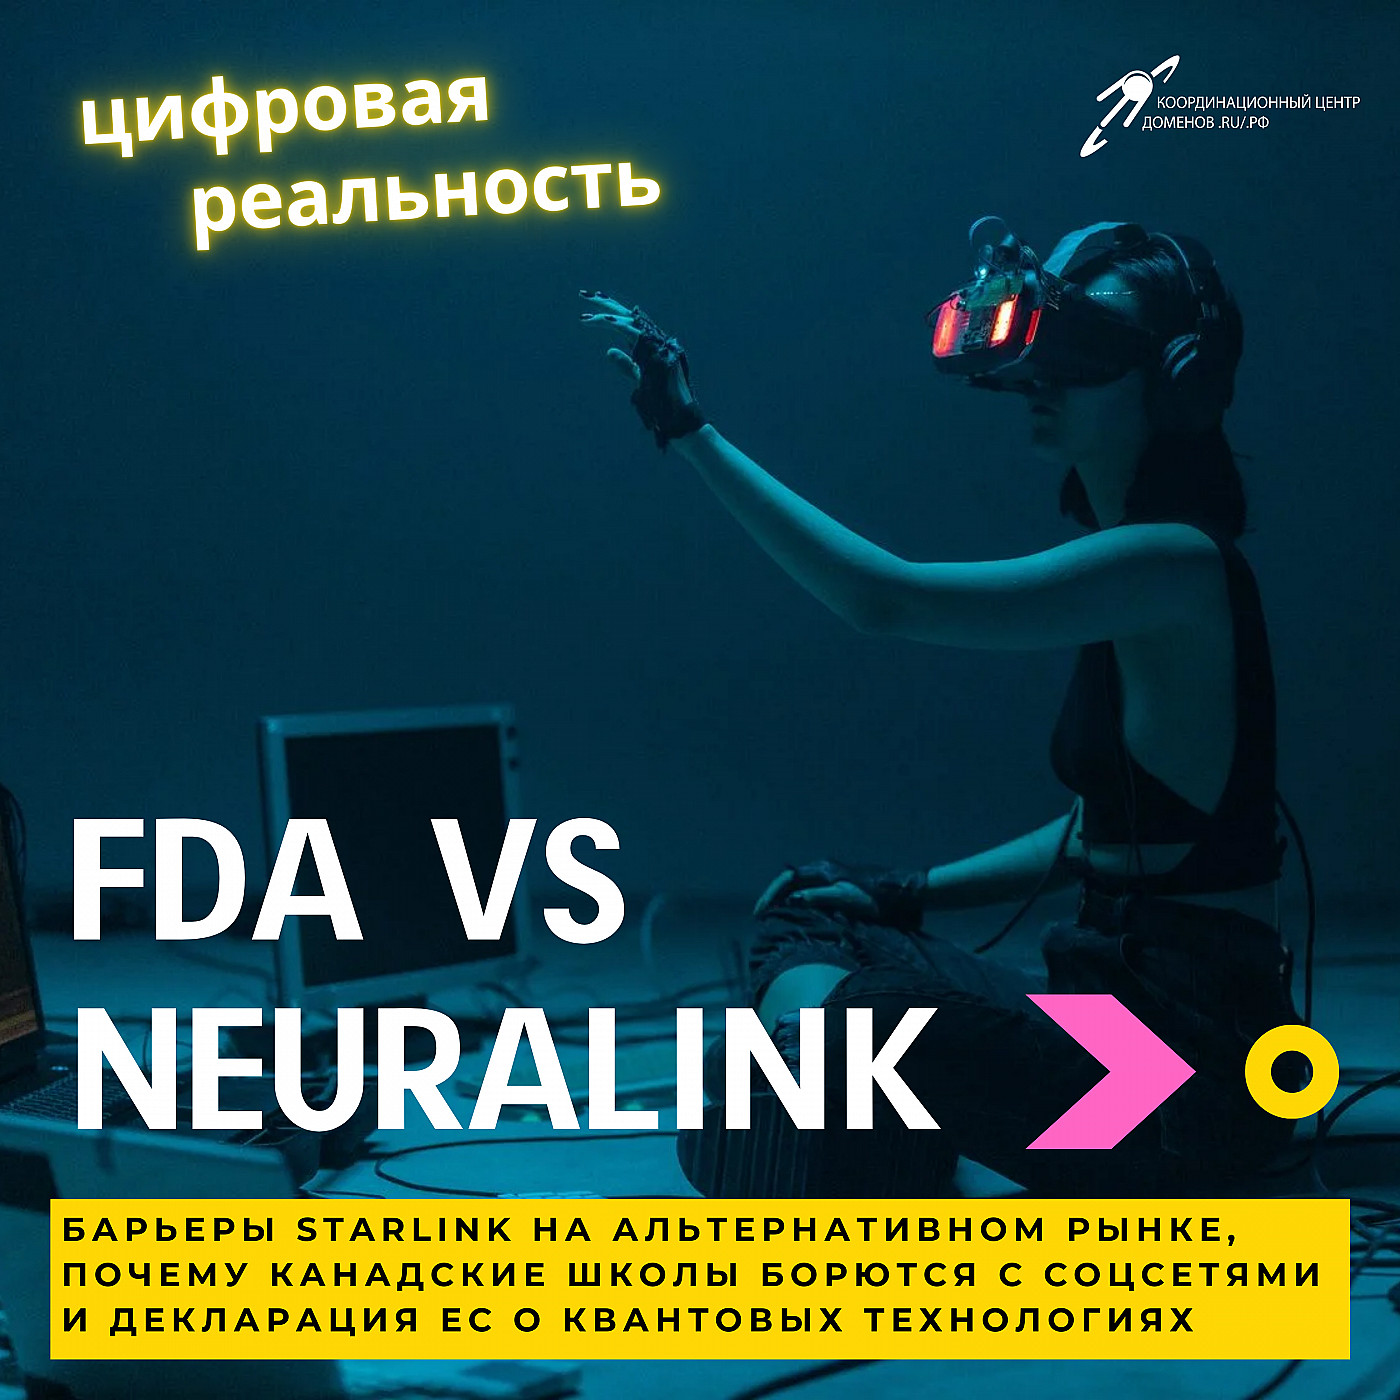 FDA vs Neuralink, борьба канадских школ с соцсетями, барьеры Starlink, ЕС и квантовые технологии